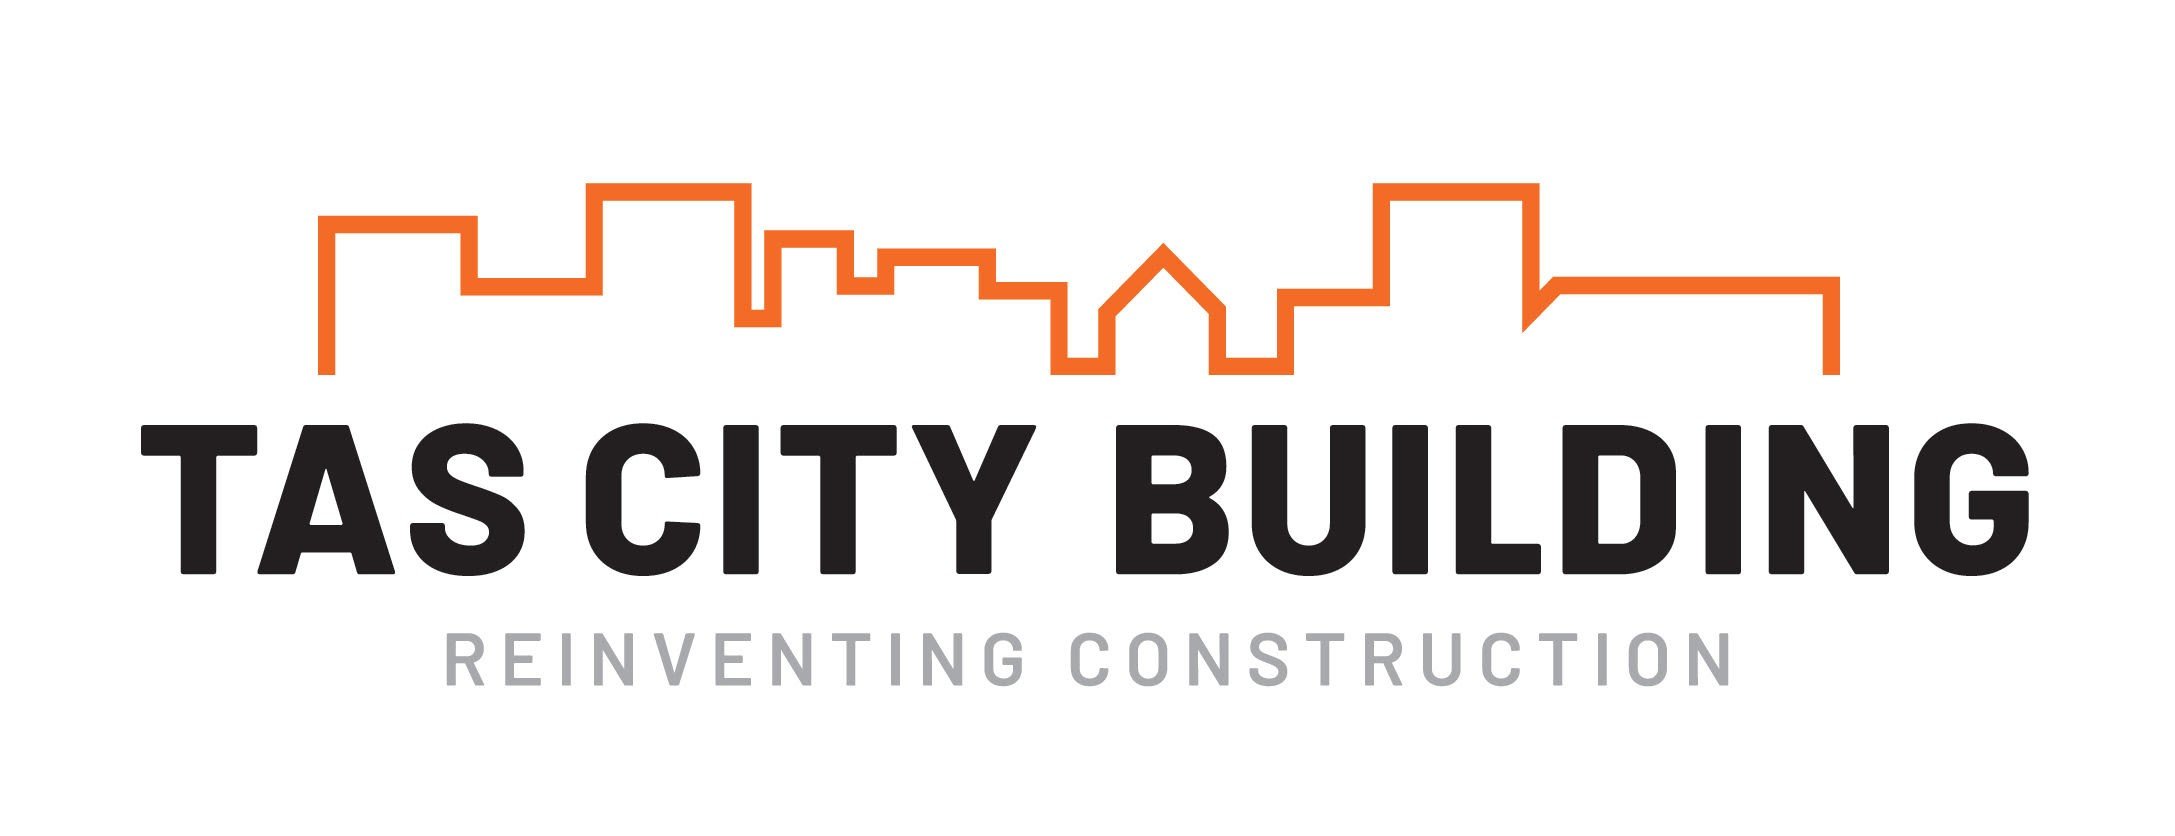 Tas City new logo 2.jpg